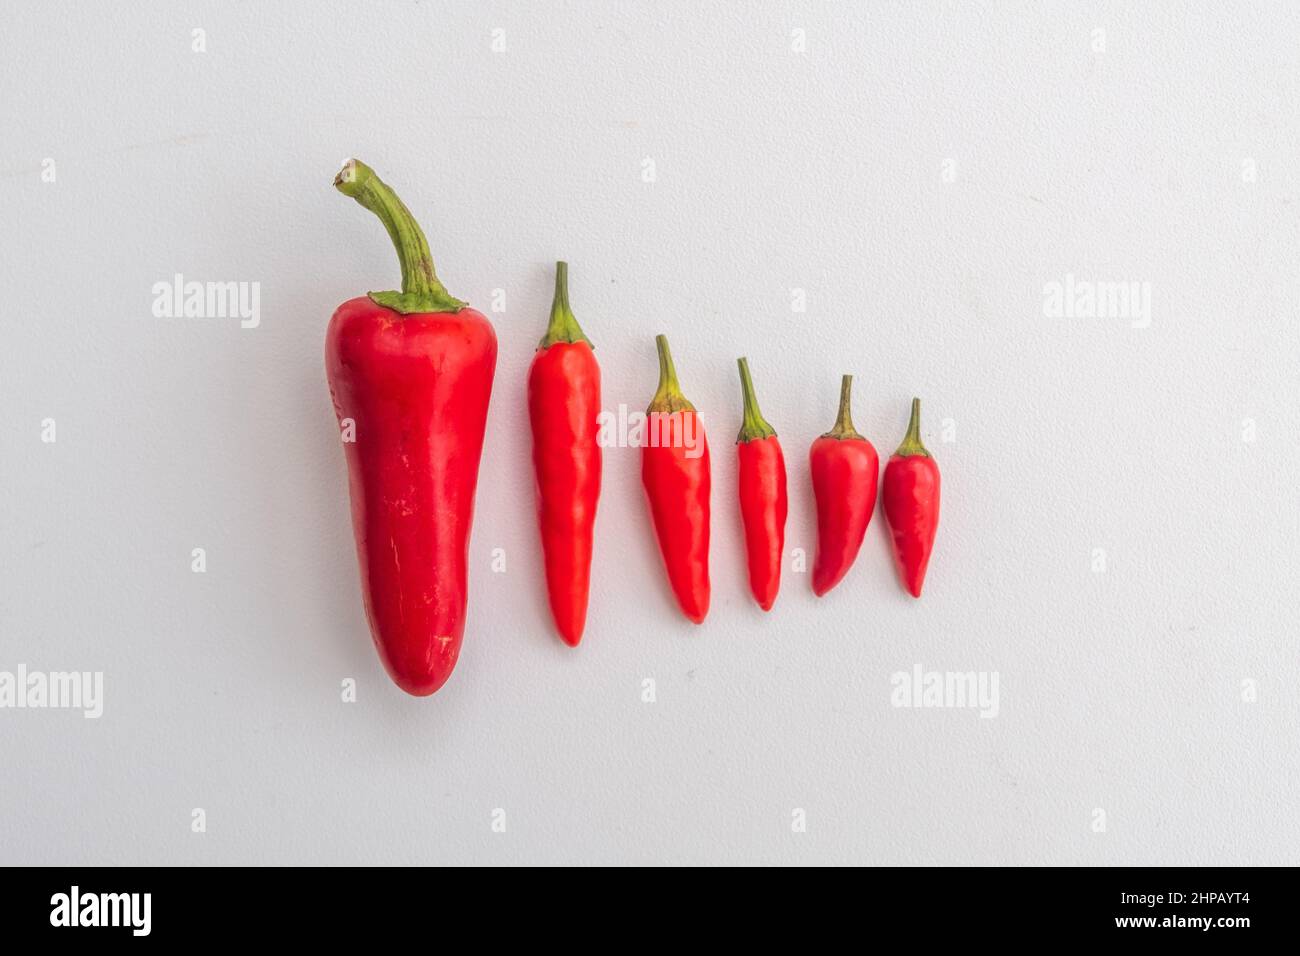 Red Chilis sur fond blanc. Les piments sont également connus sous le nom de chili, piment du chili, piment du Chili ou piment. Le nom botanique est Capsicum. Banque D'Images